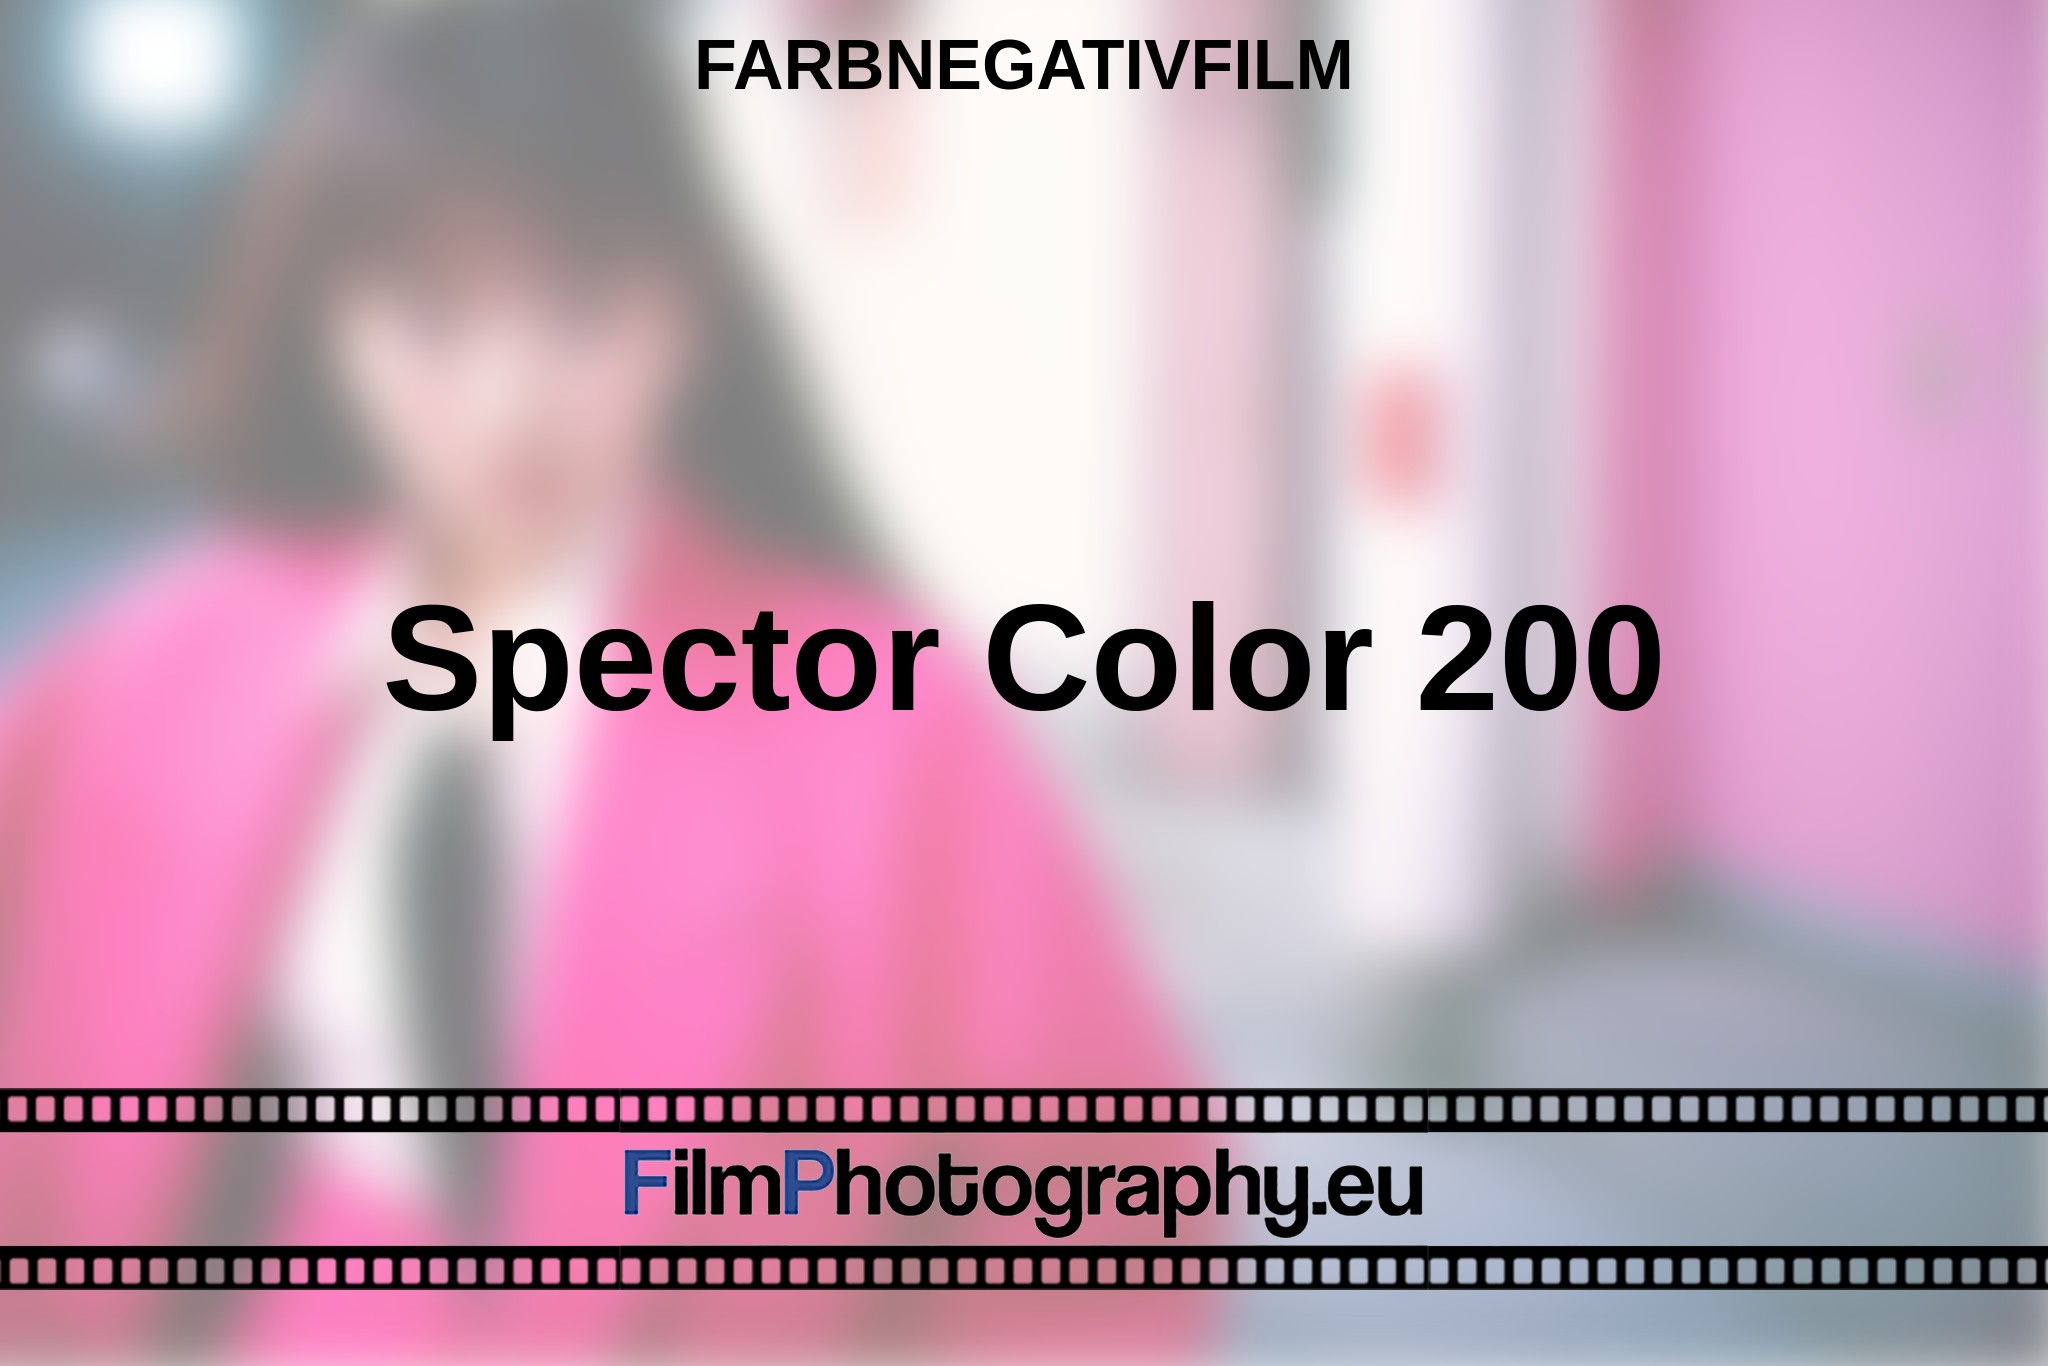 spector-color-200-farbnegativfilm-bnv.jpg